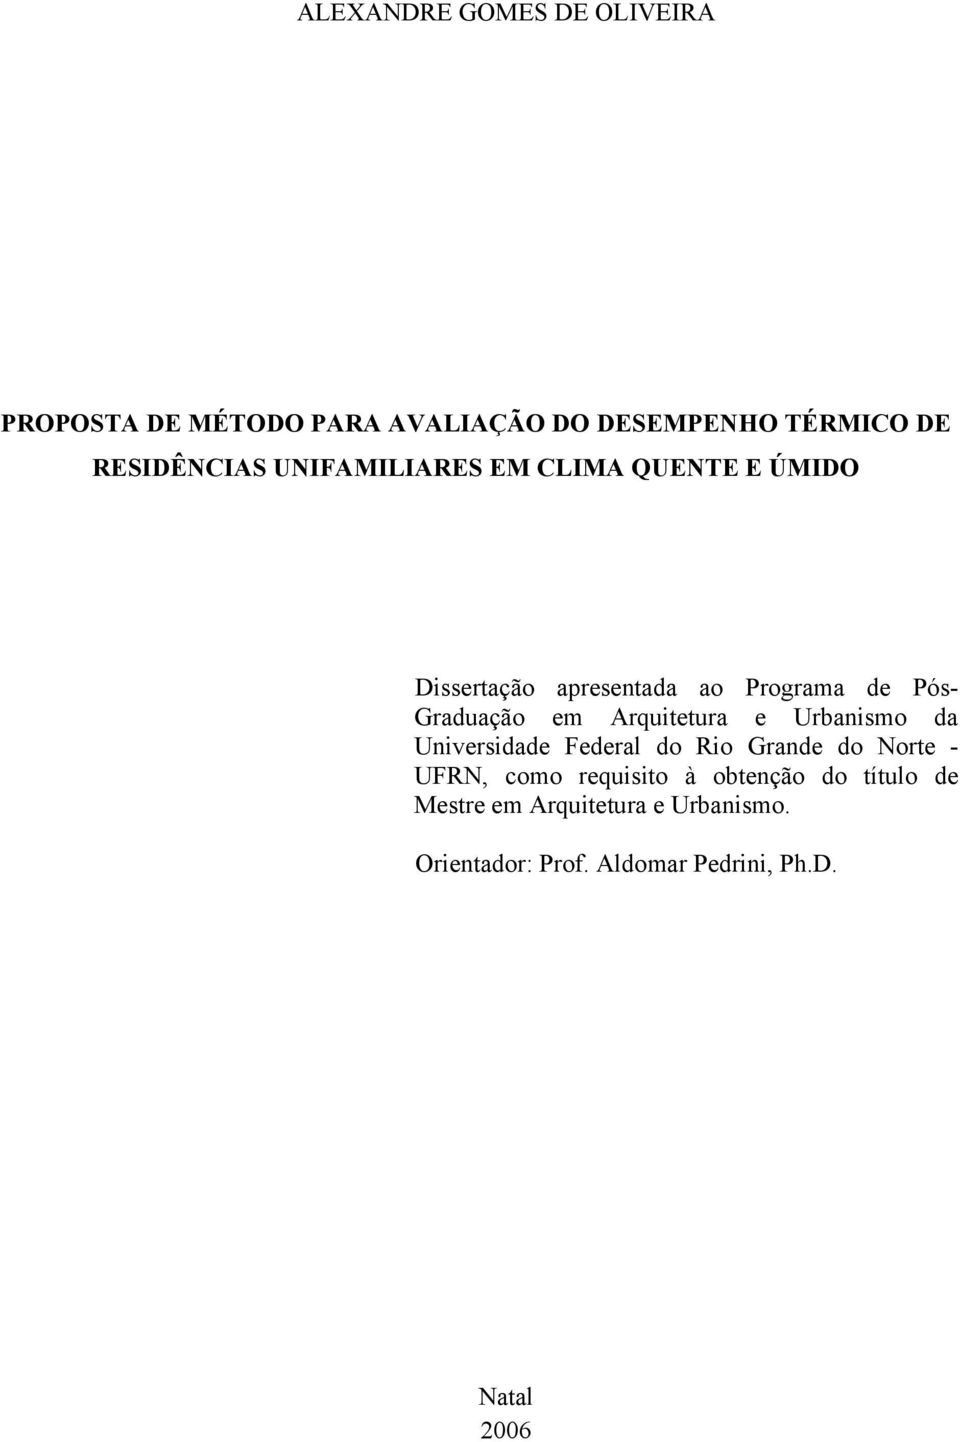 Arquitetura e Urbanismo da Universidade Federal do Rio Grande do Norte - UFRN, como requisito à